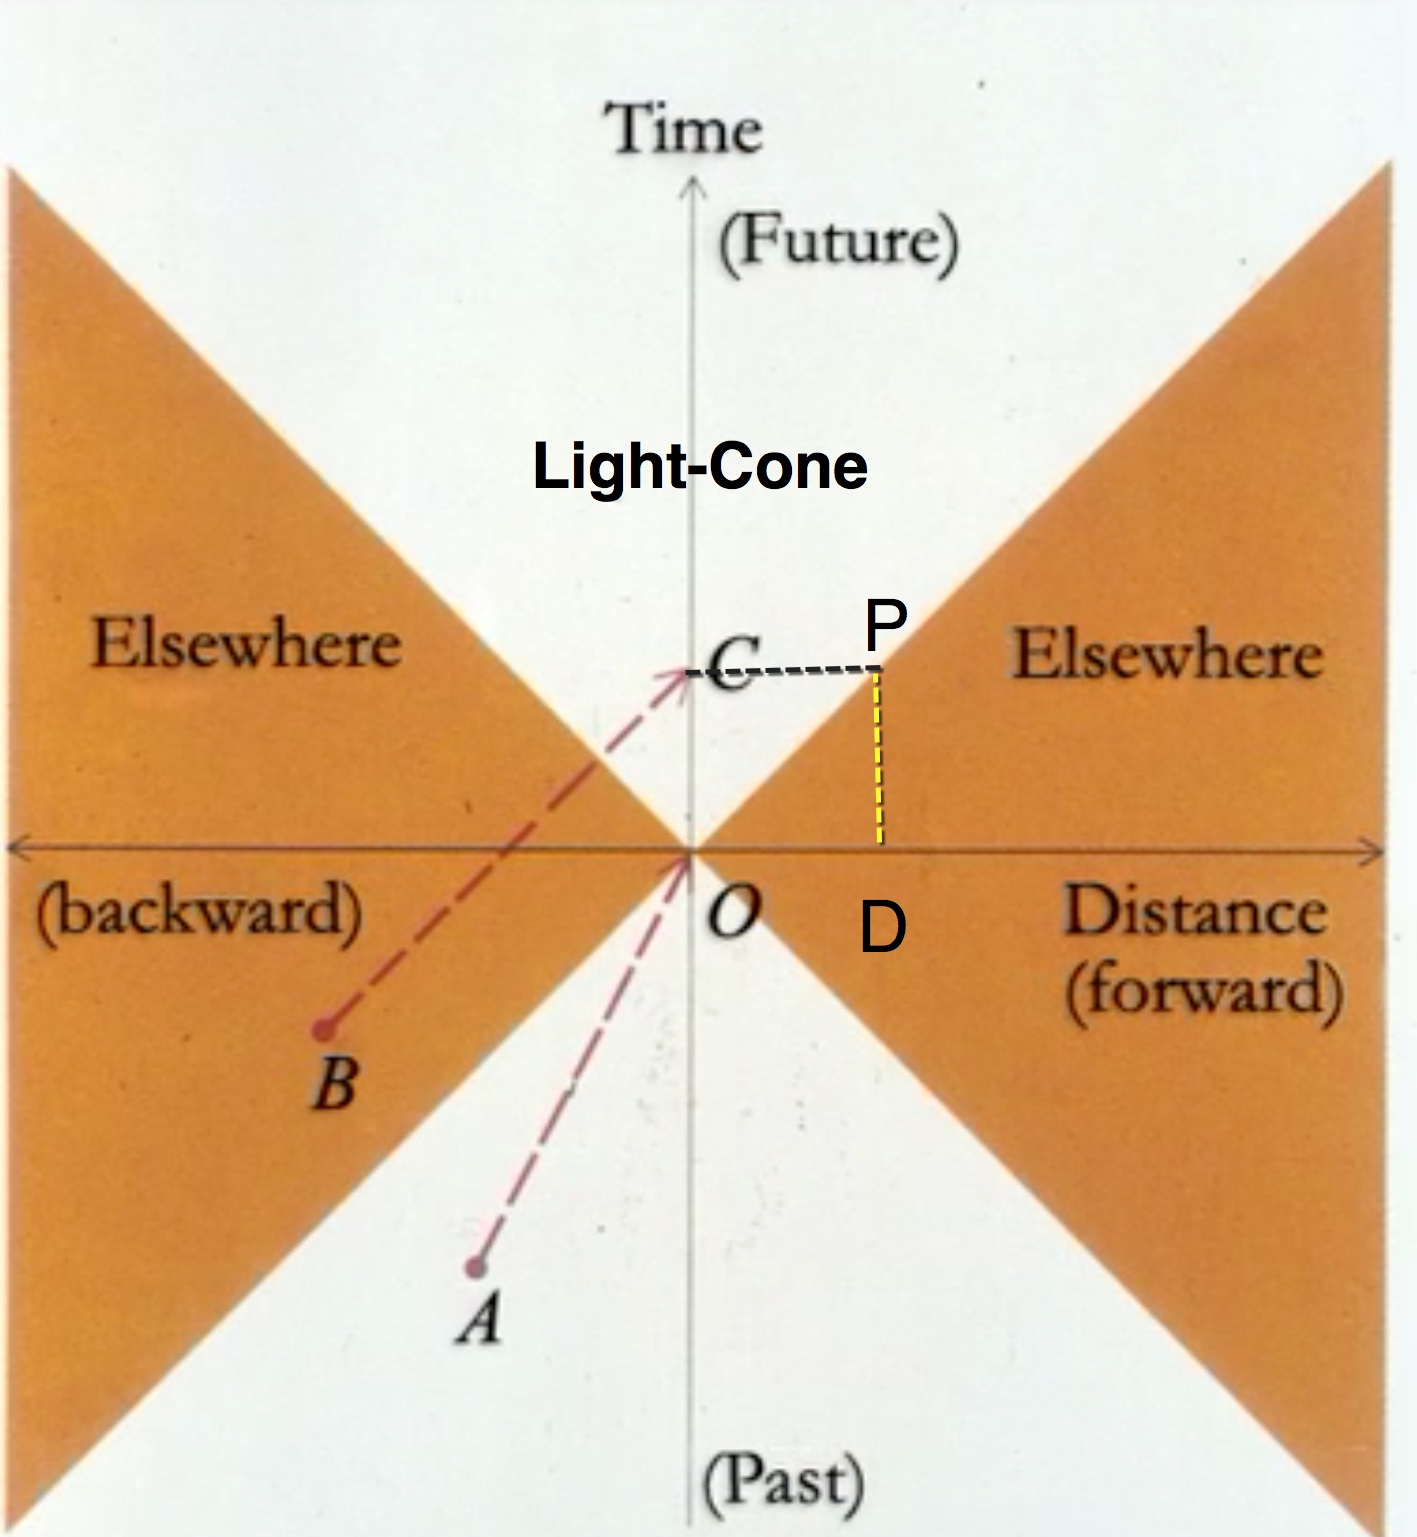 spacetime-diagram